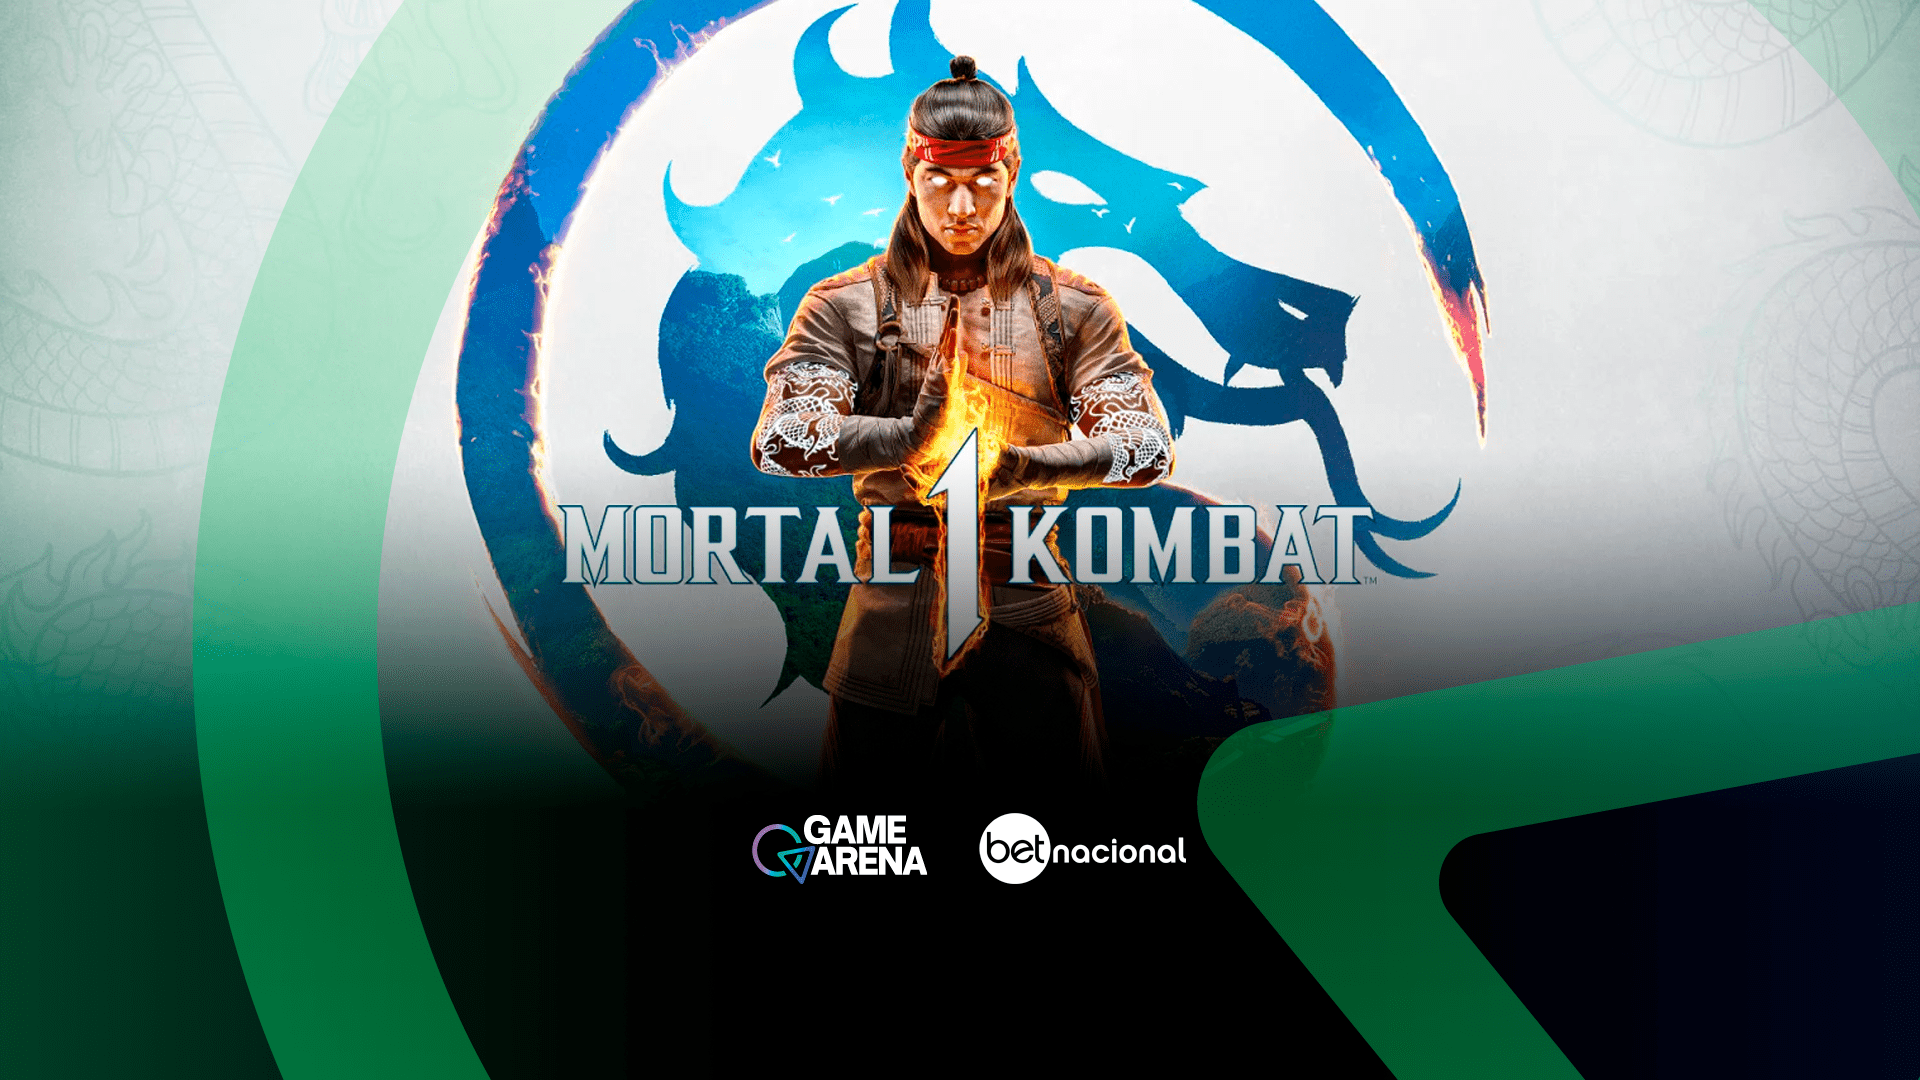 Mortal Kombat 1: requisitos mínimos e recomendados para rodar no PC